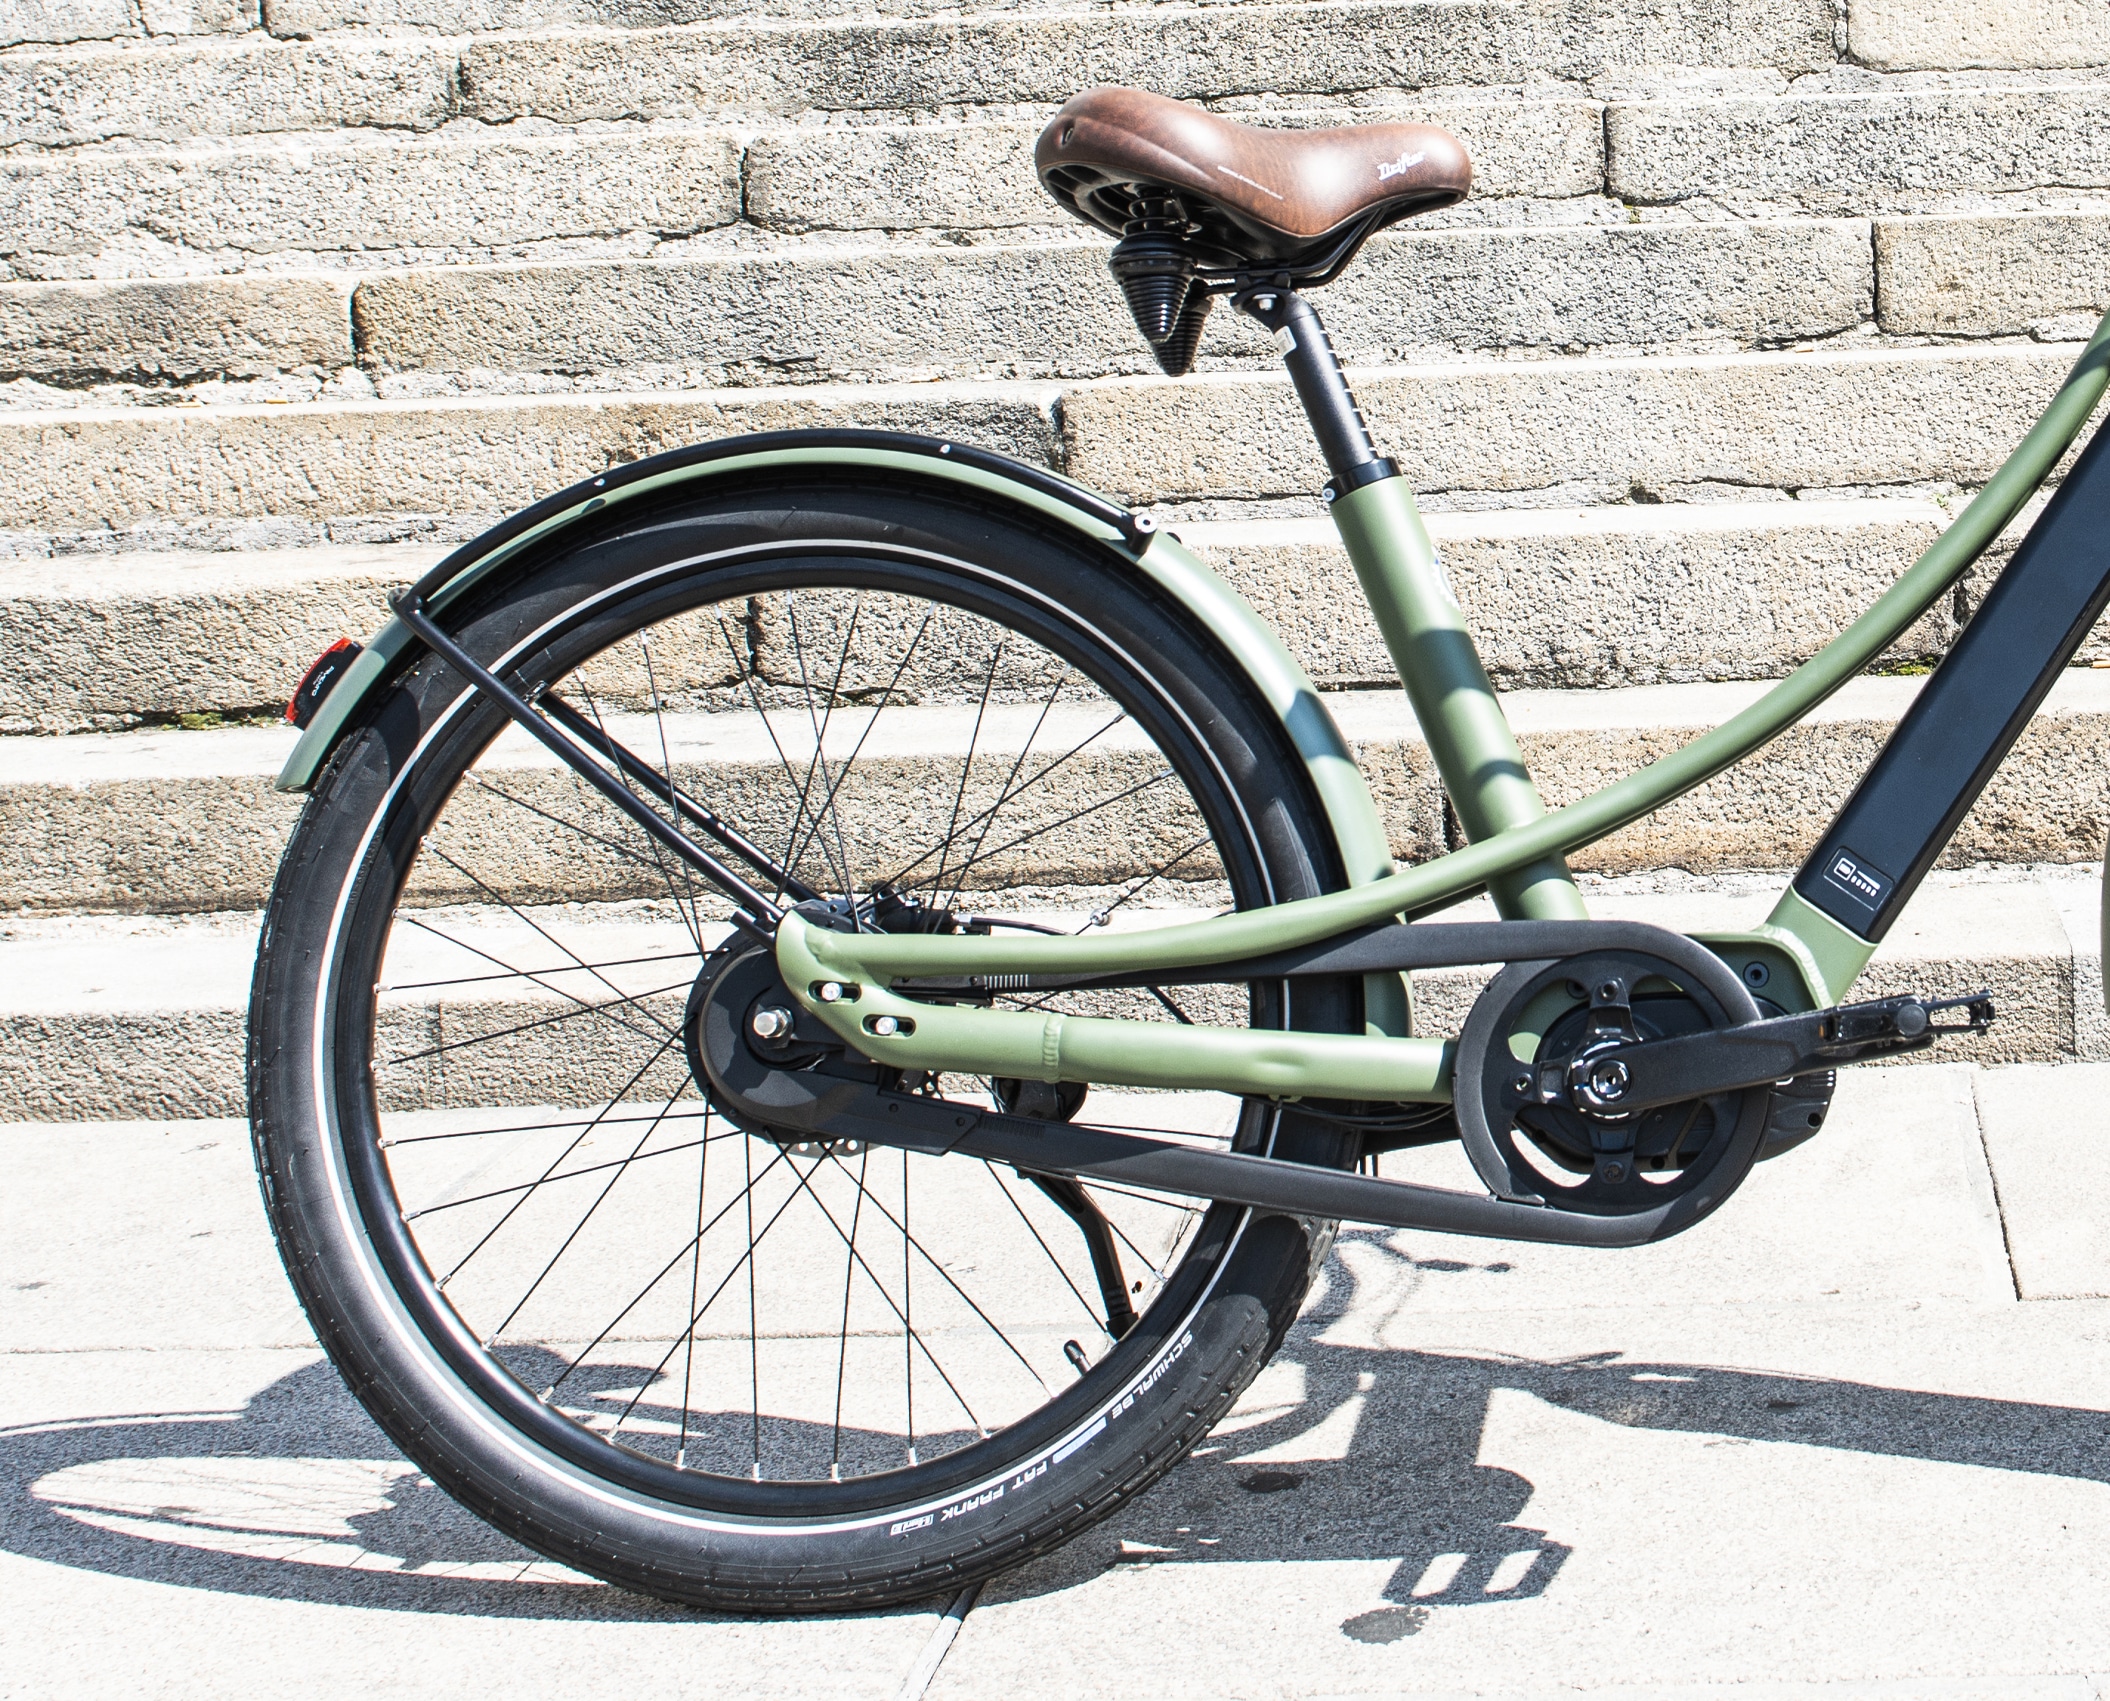 design arrière du vélo électrique coloris Kaki en version cadre bas Reinebike Made in france